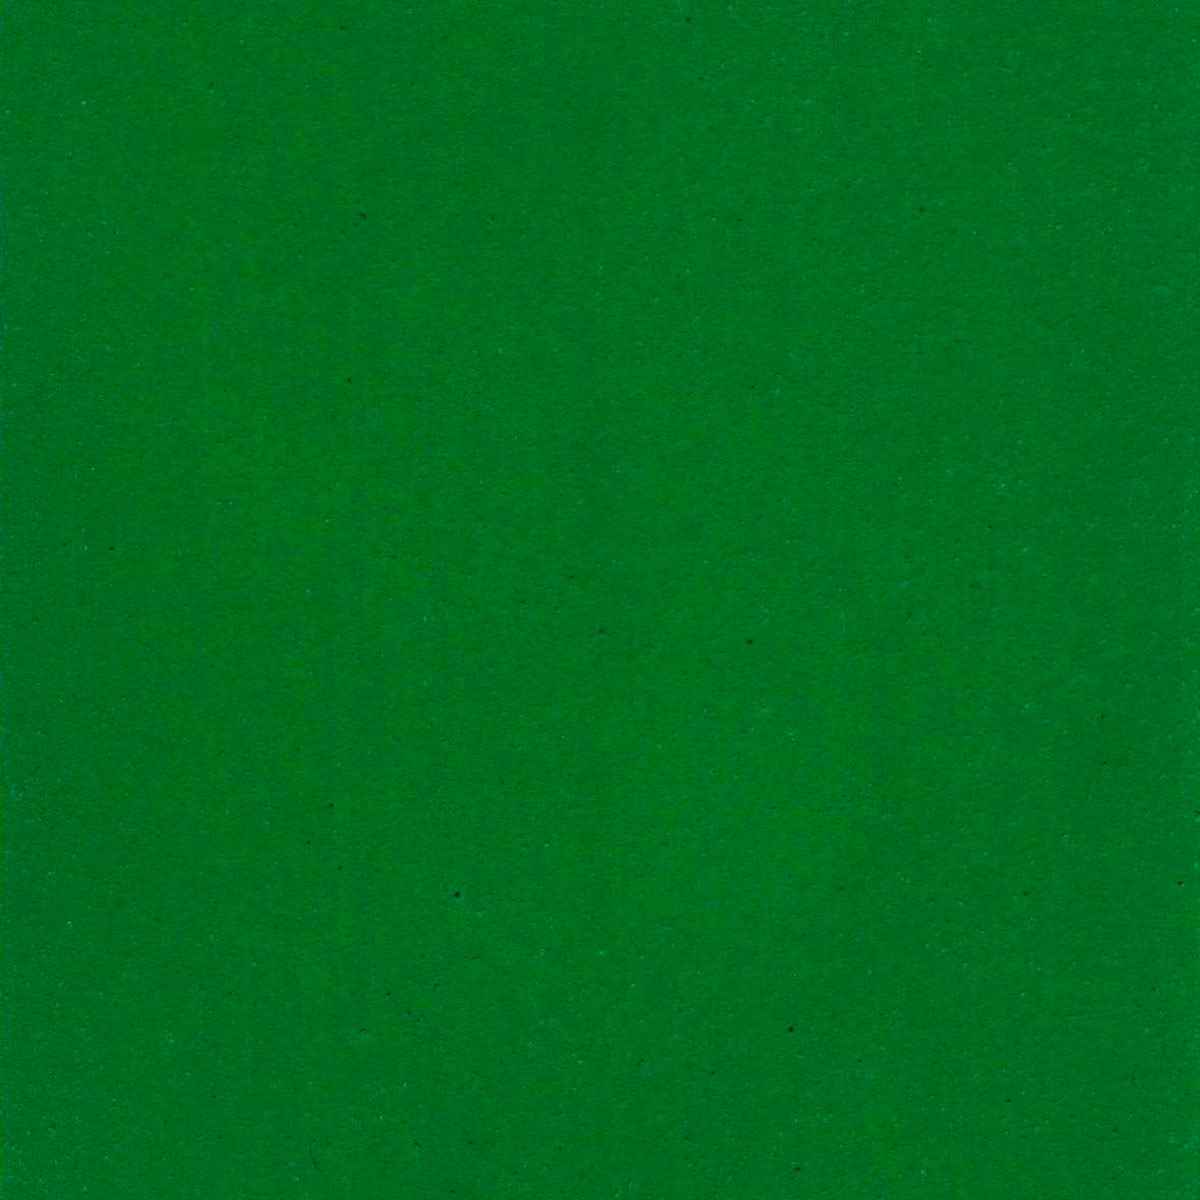 https://colourlex.com/wp-content/uploads/2021/02/Emerald-green-painted-swatch.jpg